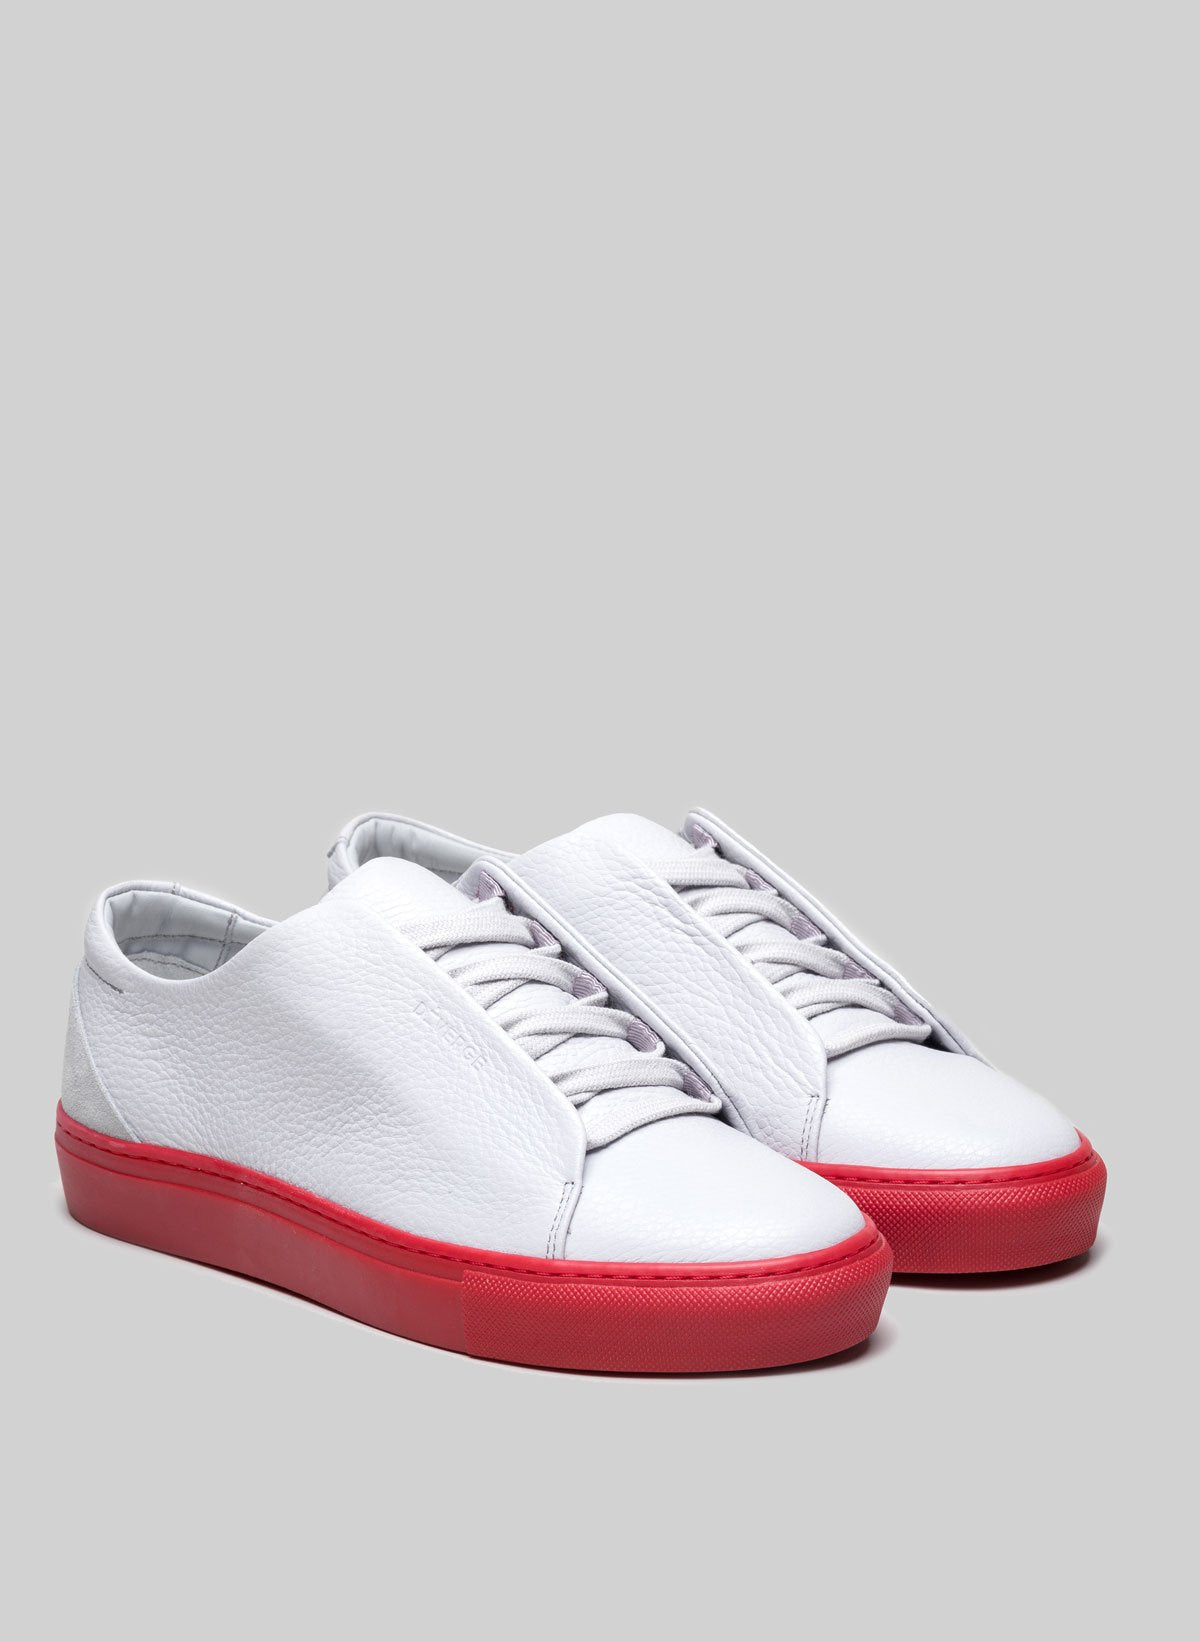 Ein Paar weiße Low Tops sneakers mit roten Sohlen von Diverge.